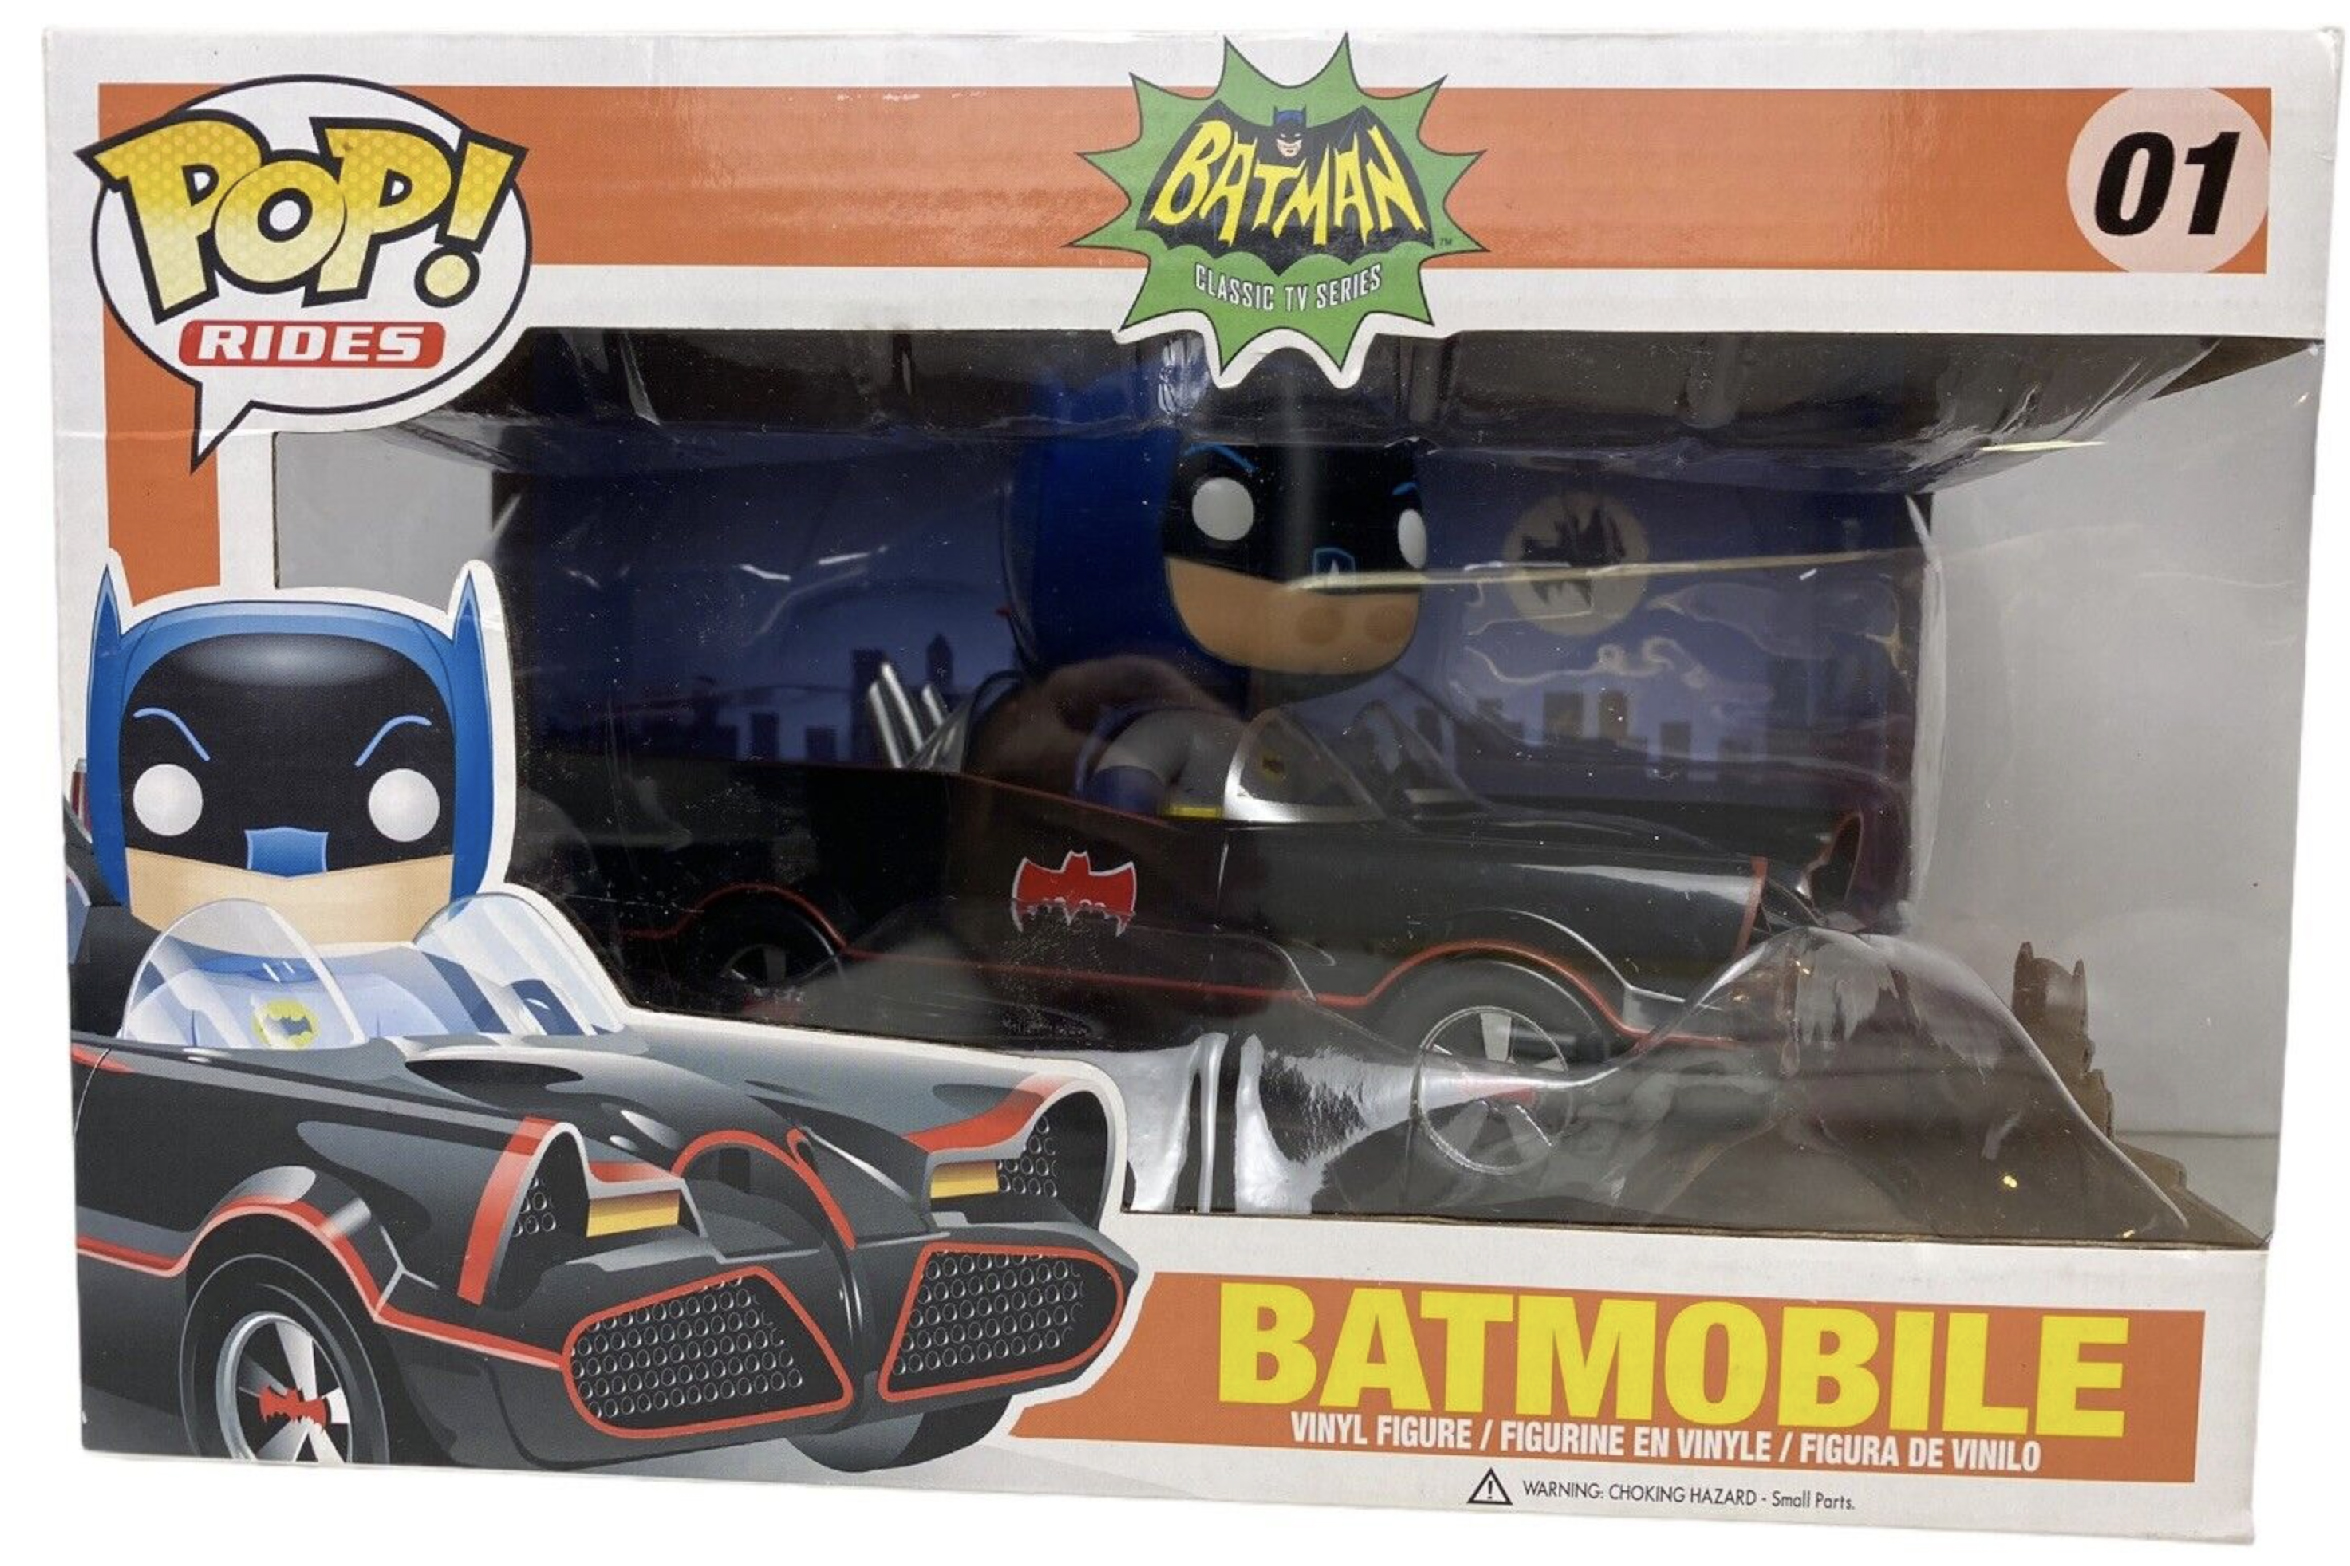 Pop! Rides Batman in Batmobile Classic in Pop! Box